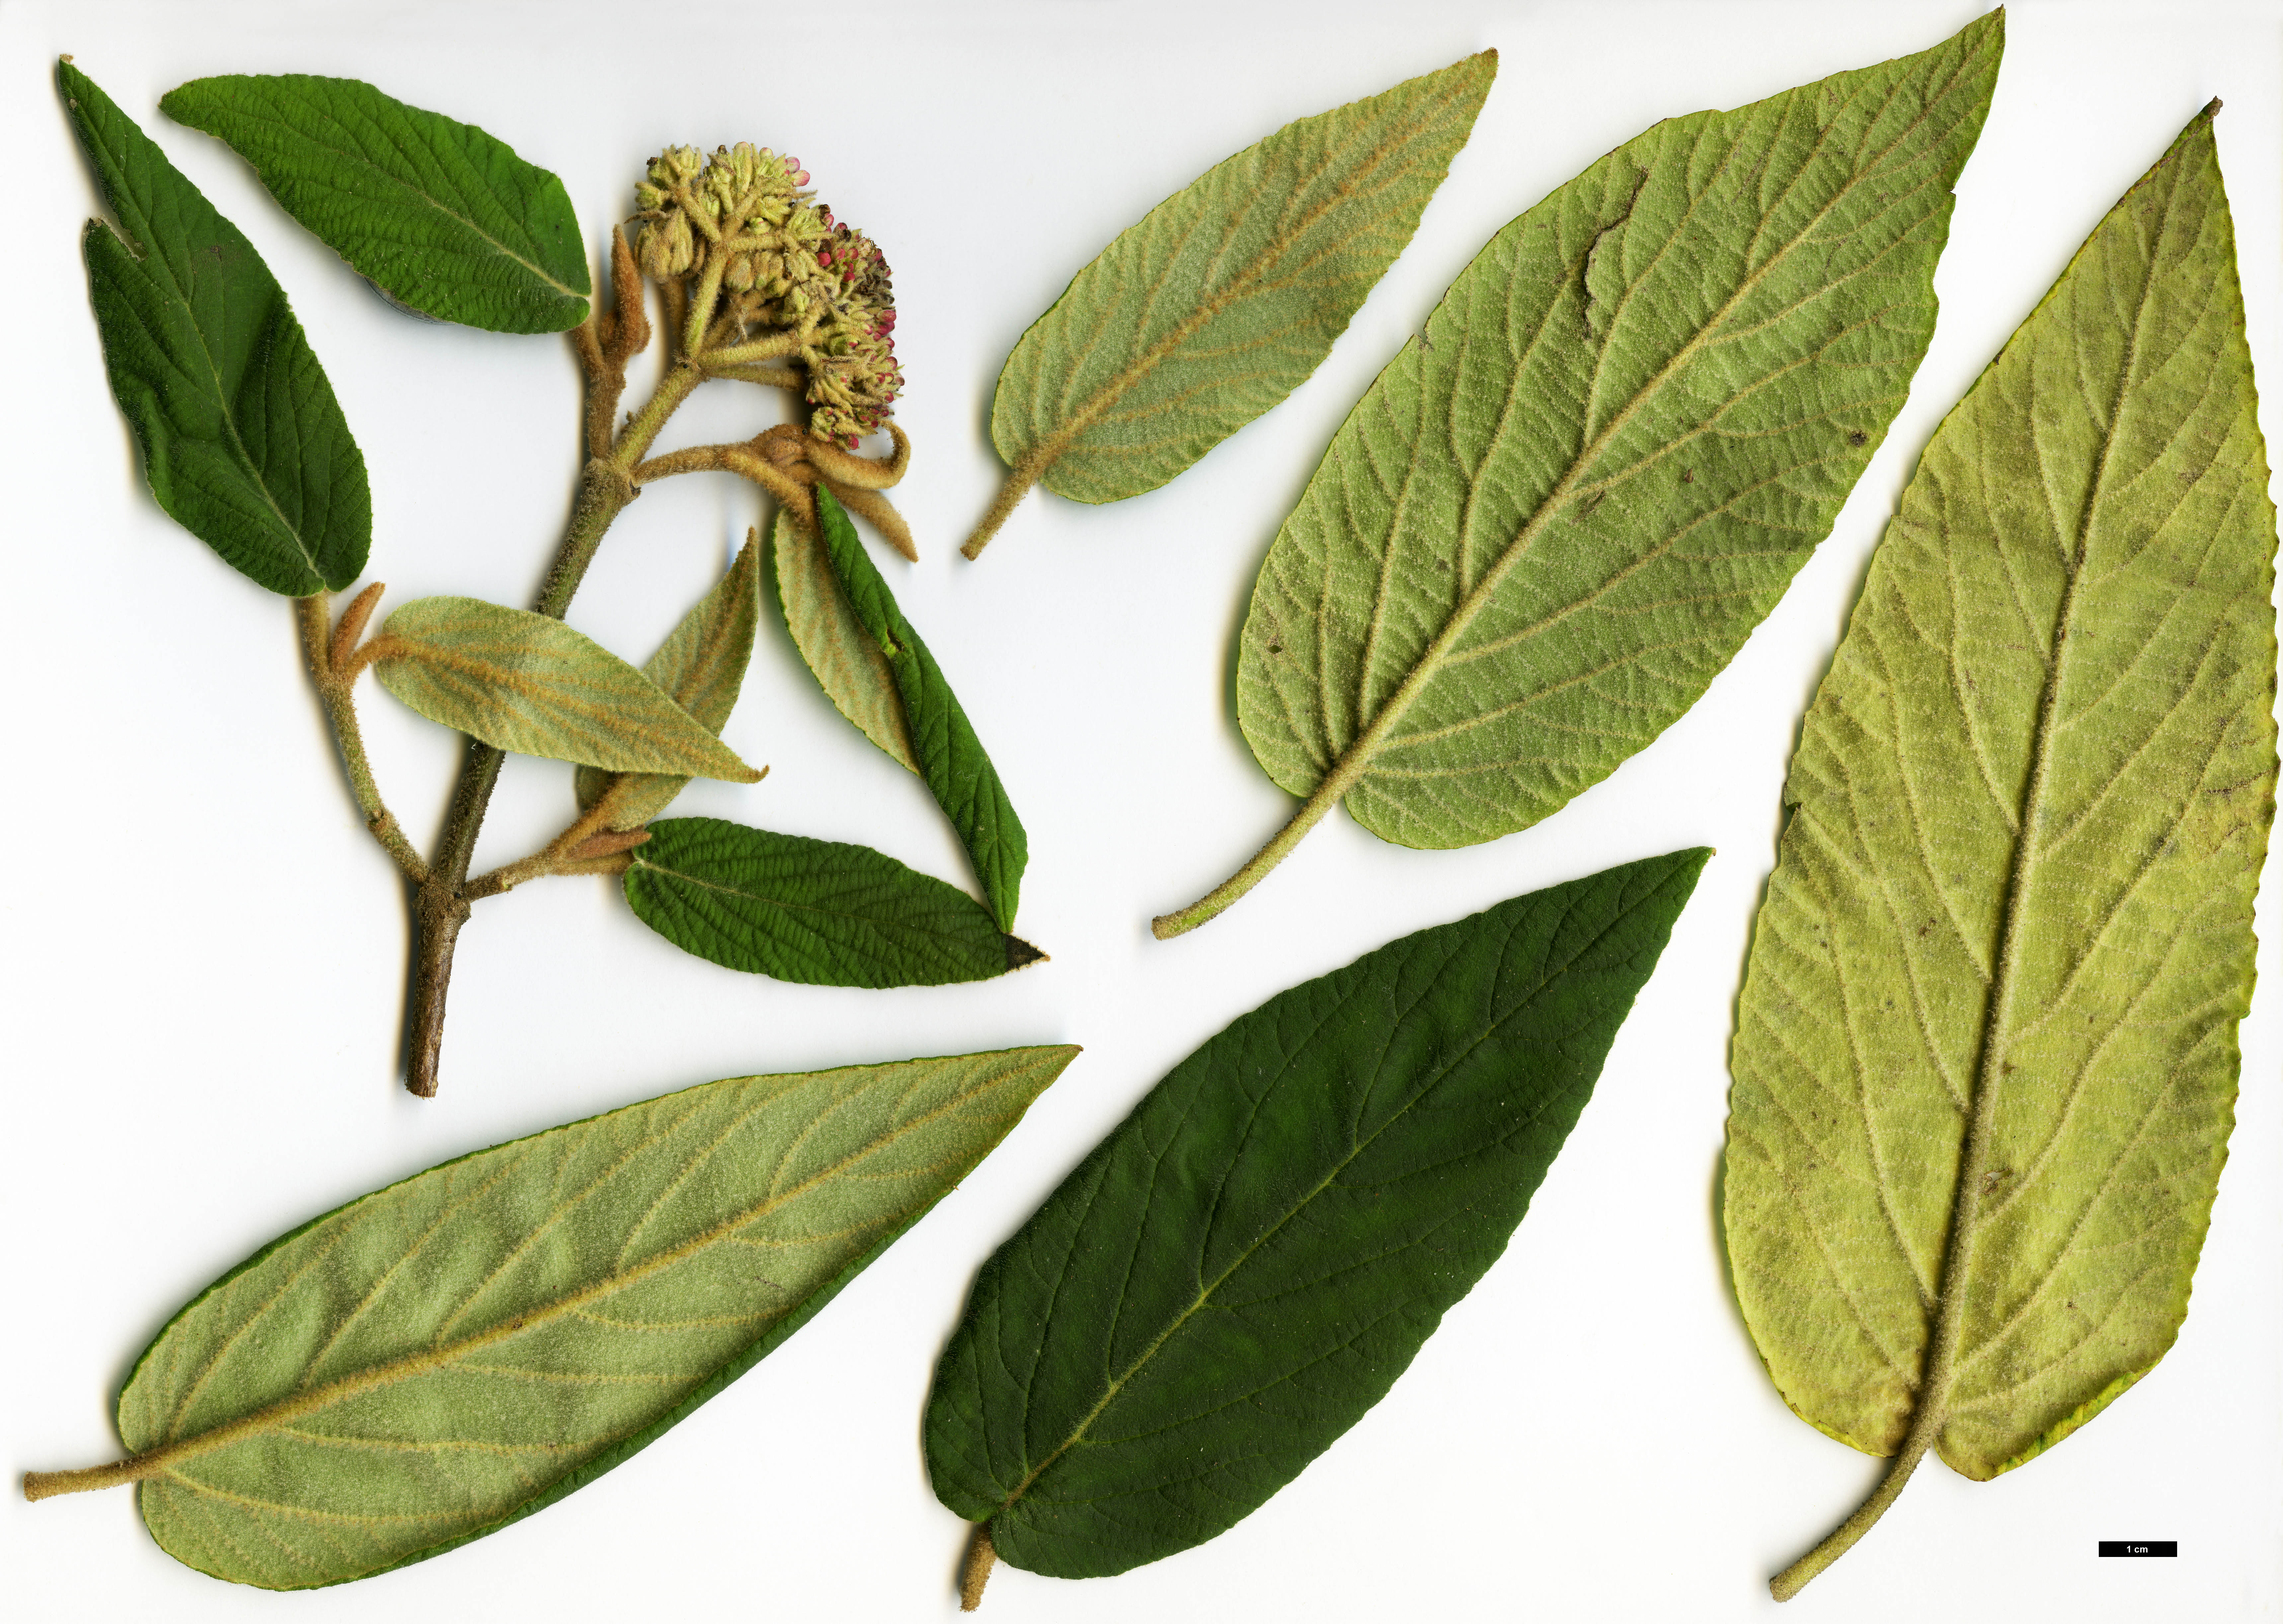 High resolution image: Family: Adoxaceae - Genus: Viburnum - Taxon: buddleifolium